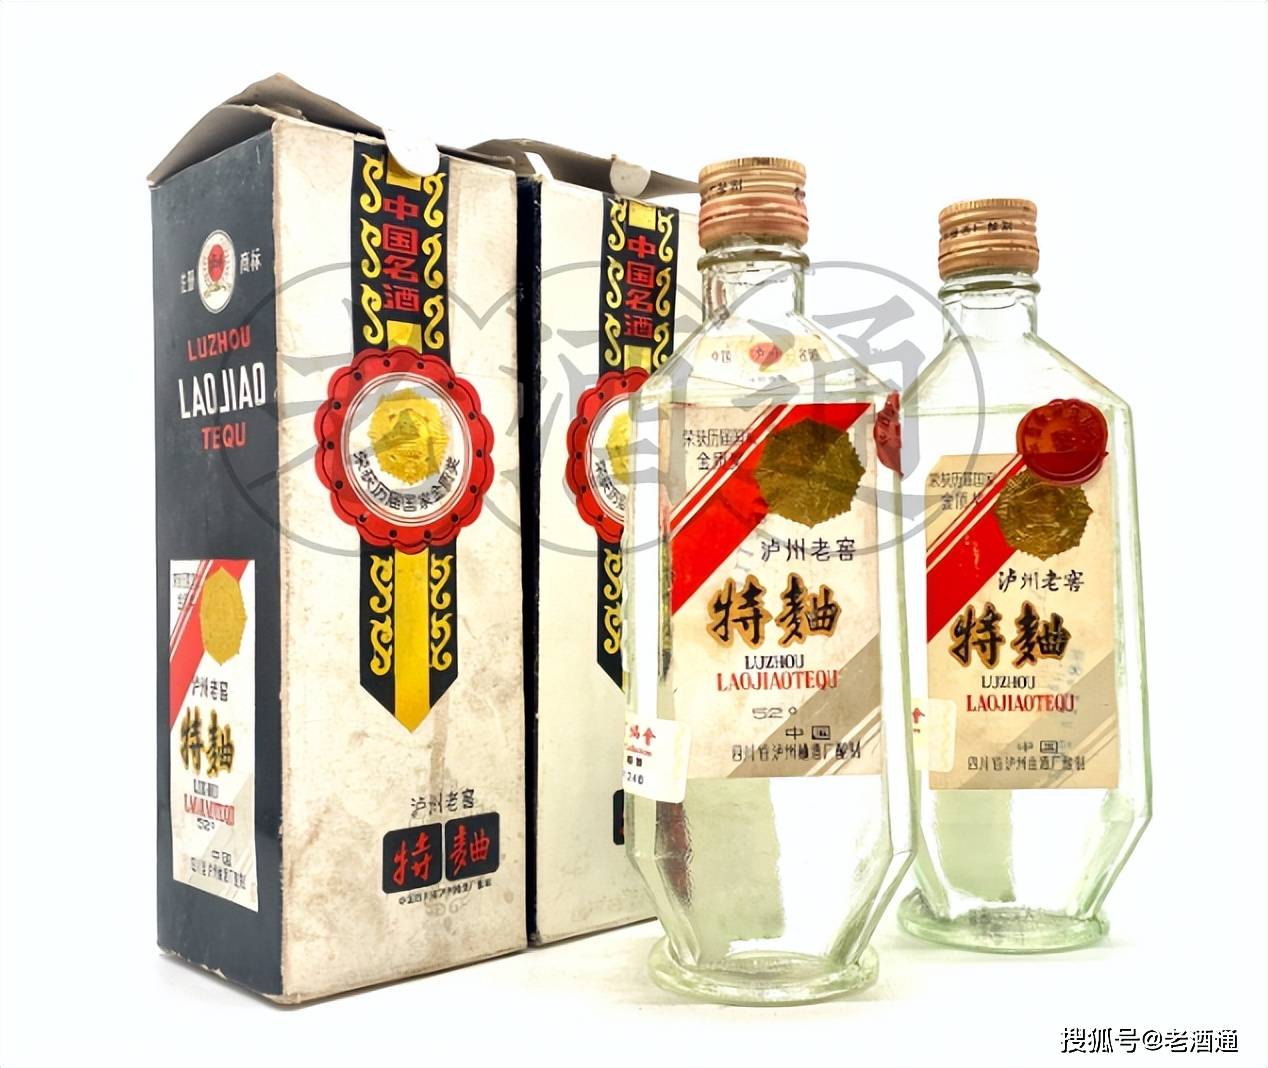 中国酒高級中国四川名酒瀘州老窖500ml38%vol2015年特別製作中国を代表